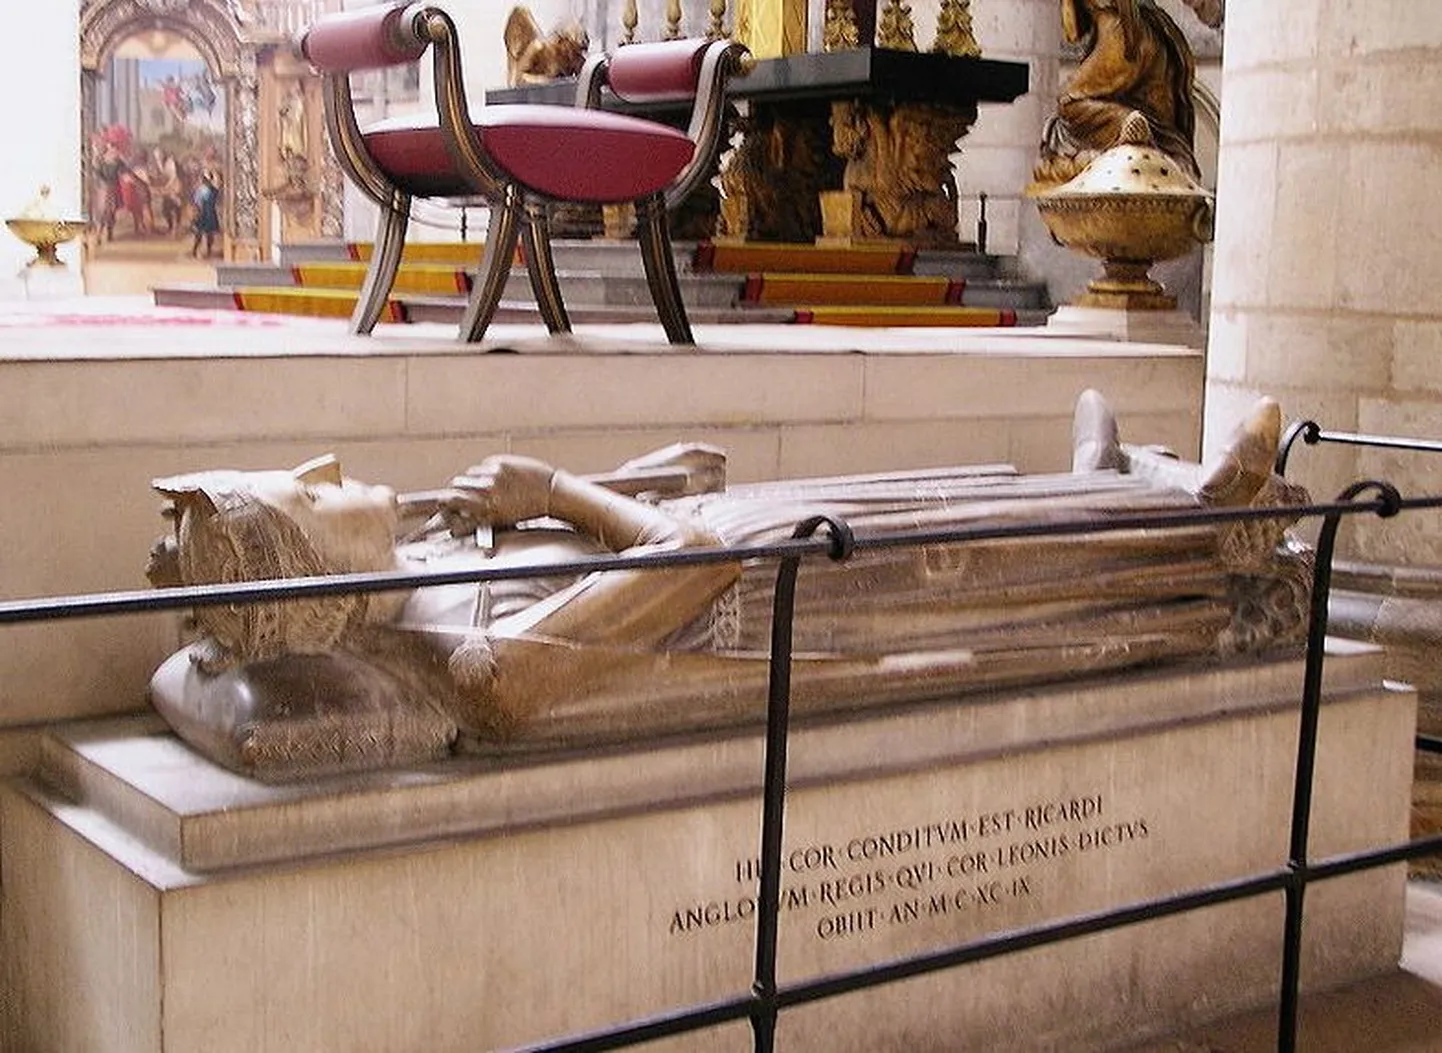 Richard I Lõvisüdame hauamonument Roueni katedraalis. Selles on ka kuninga süda